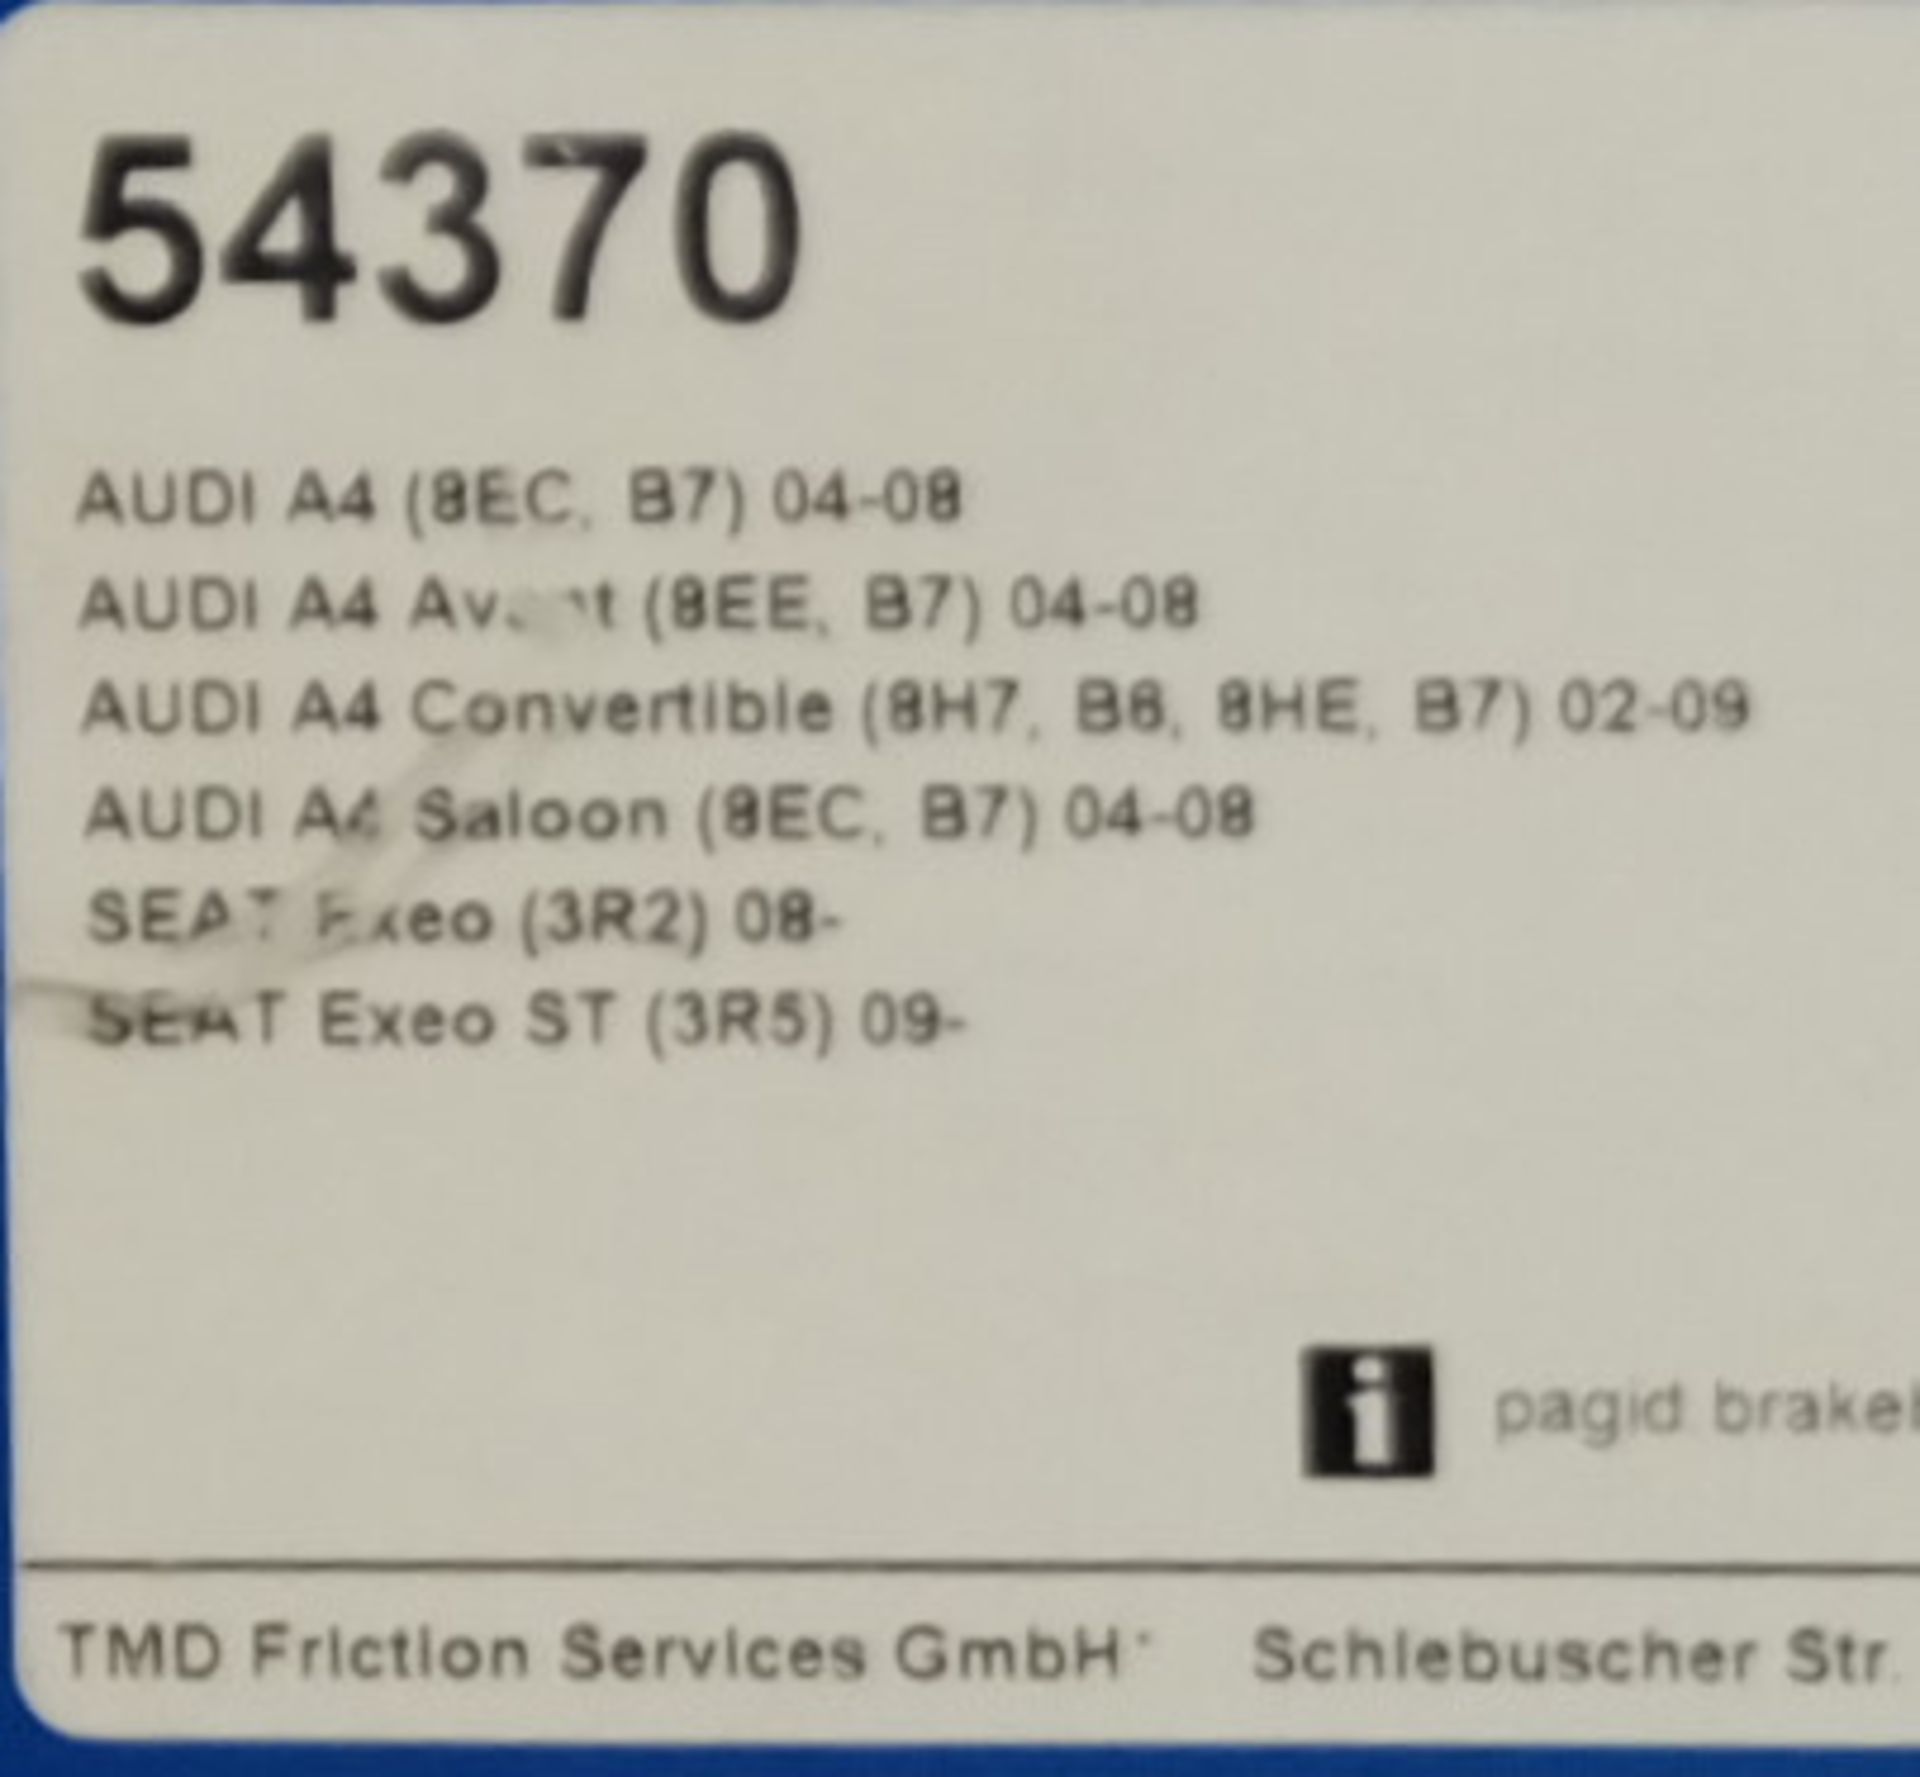 2x Pagid Brake Disc Sets - Models - 54370 & 54598 - Image 2 of 3